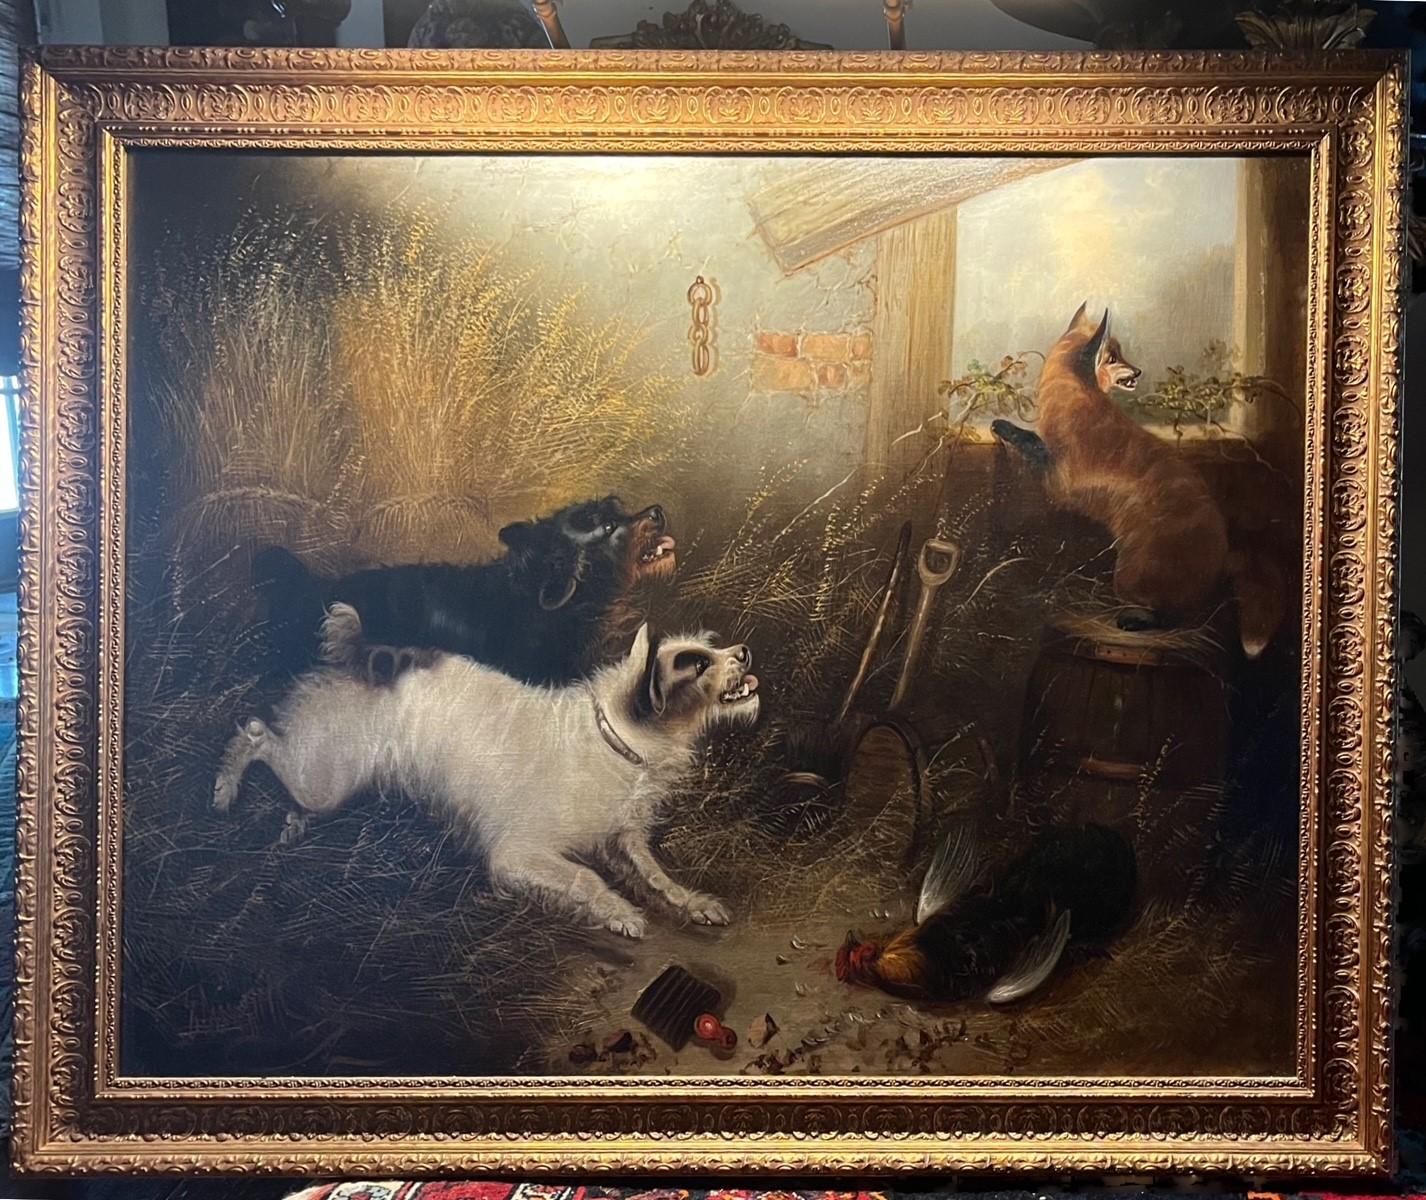 Grande peinture à l'huile anglaise du 19ème siècle -Chasing the Fox- signée E. Armfield

Grande peinture signée à l'huile sur toile. Elle représente deux chiens qui chassent un renard d'un coq. La peinture est exécutée dans la plus grande perfection